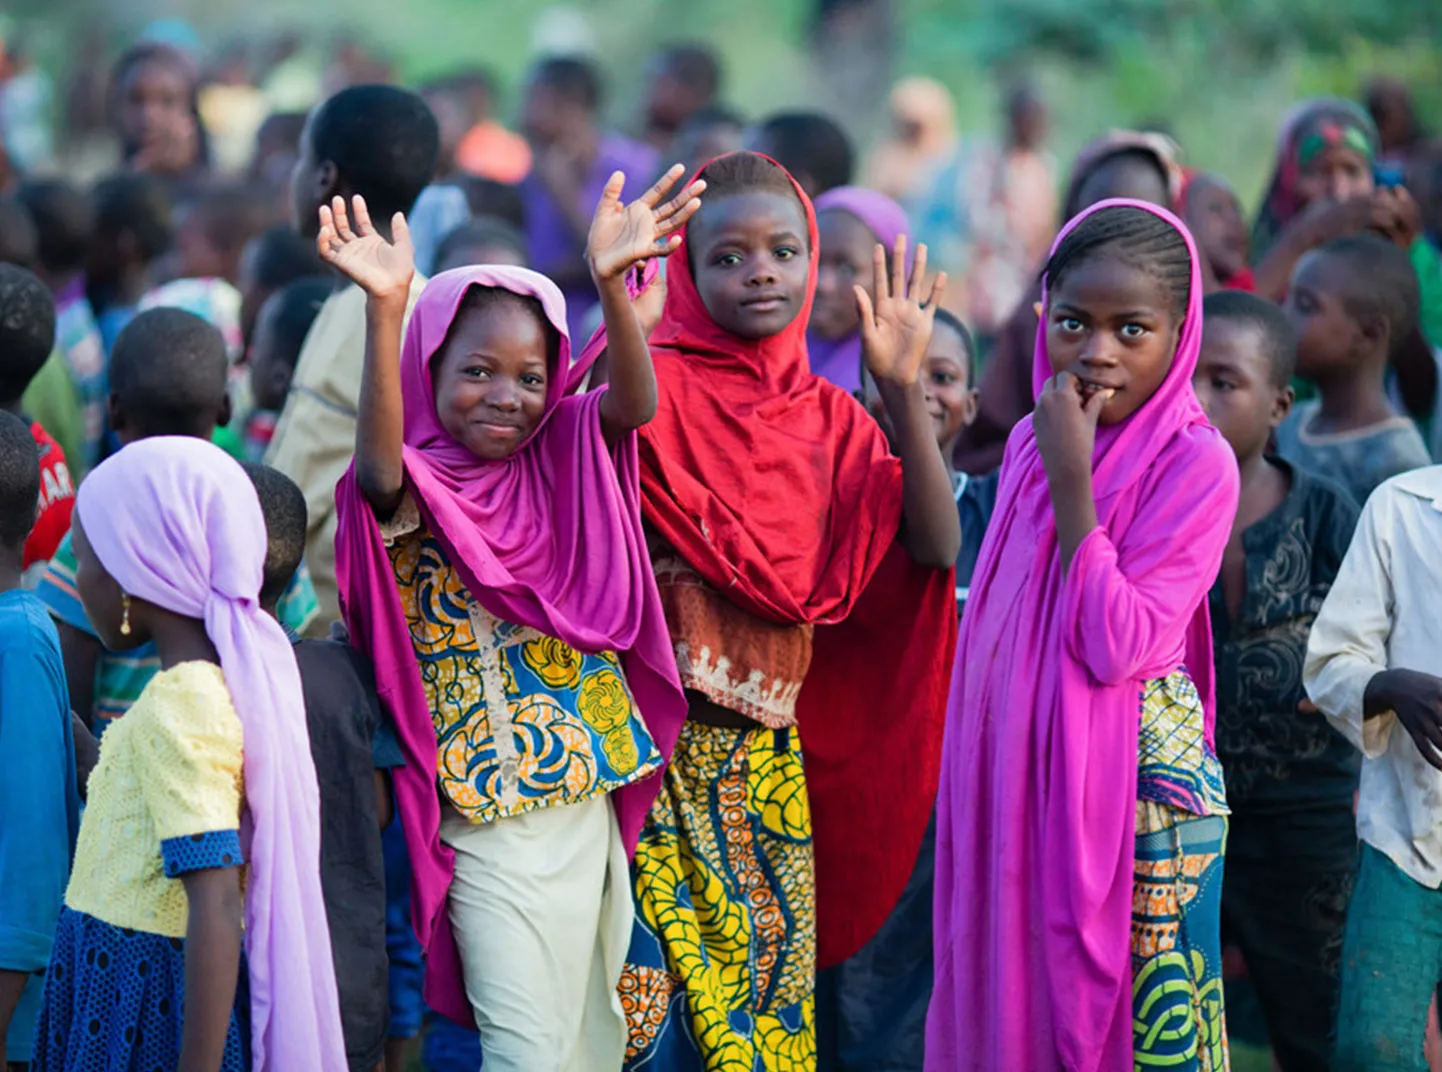 Un groupe d'enfants se réunit dans la région du Sahel au Niger. Trois d'entre eux sourient et saluent la caméra.